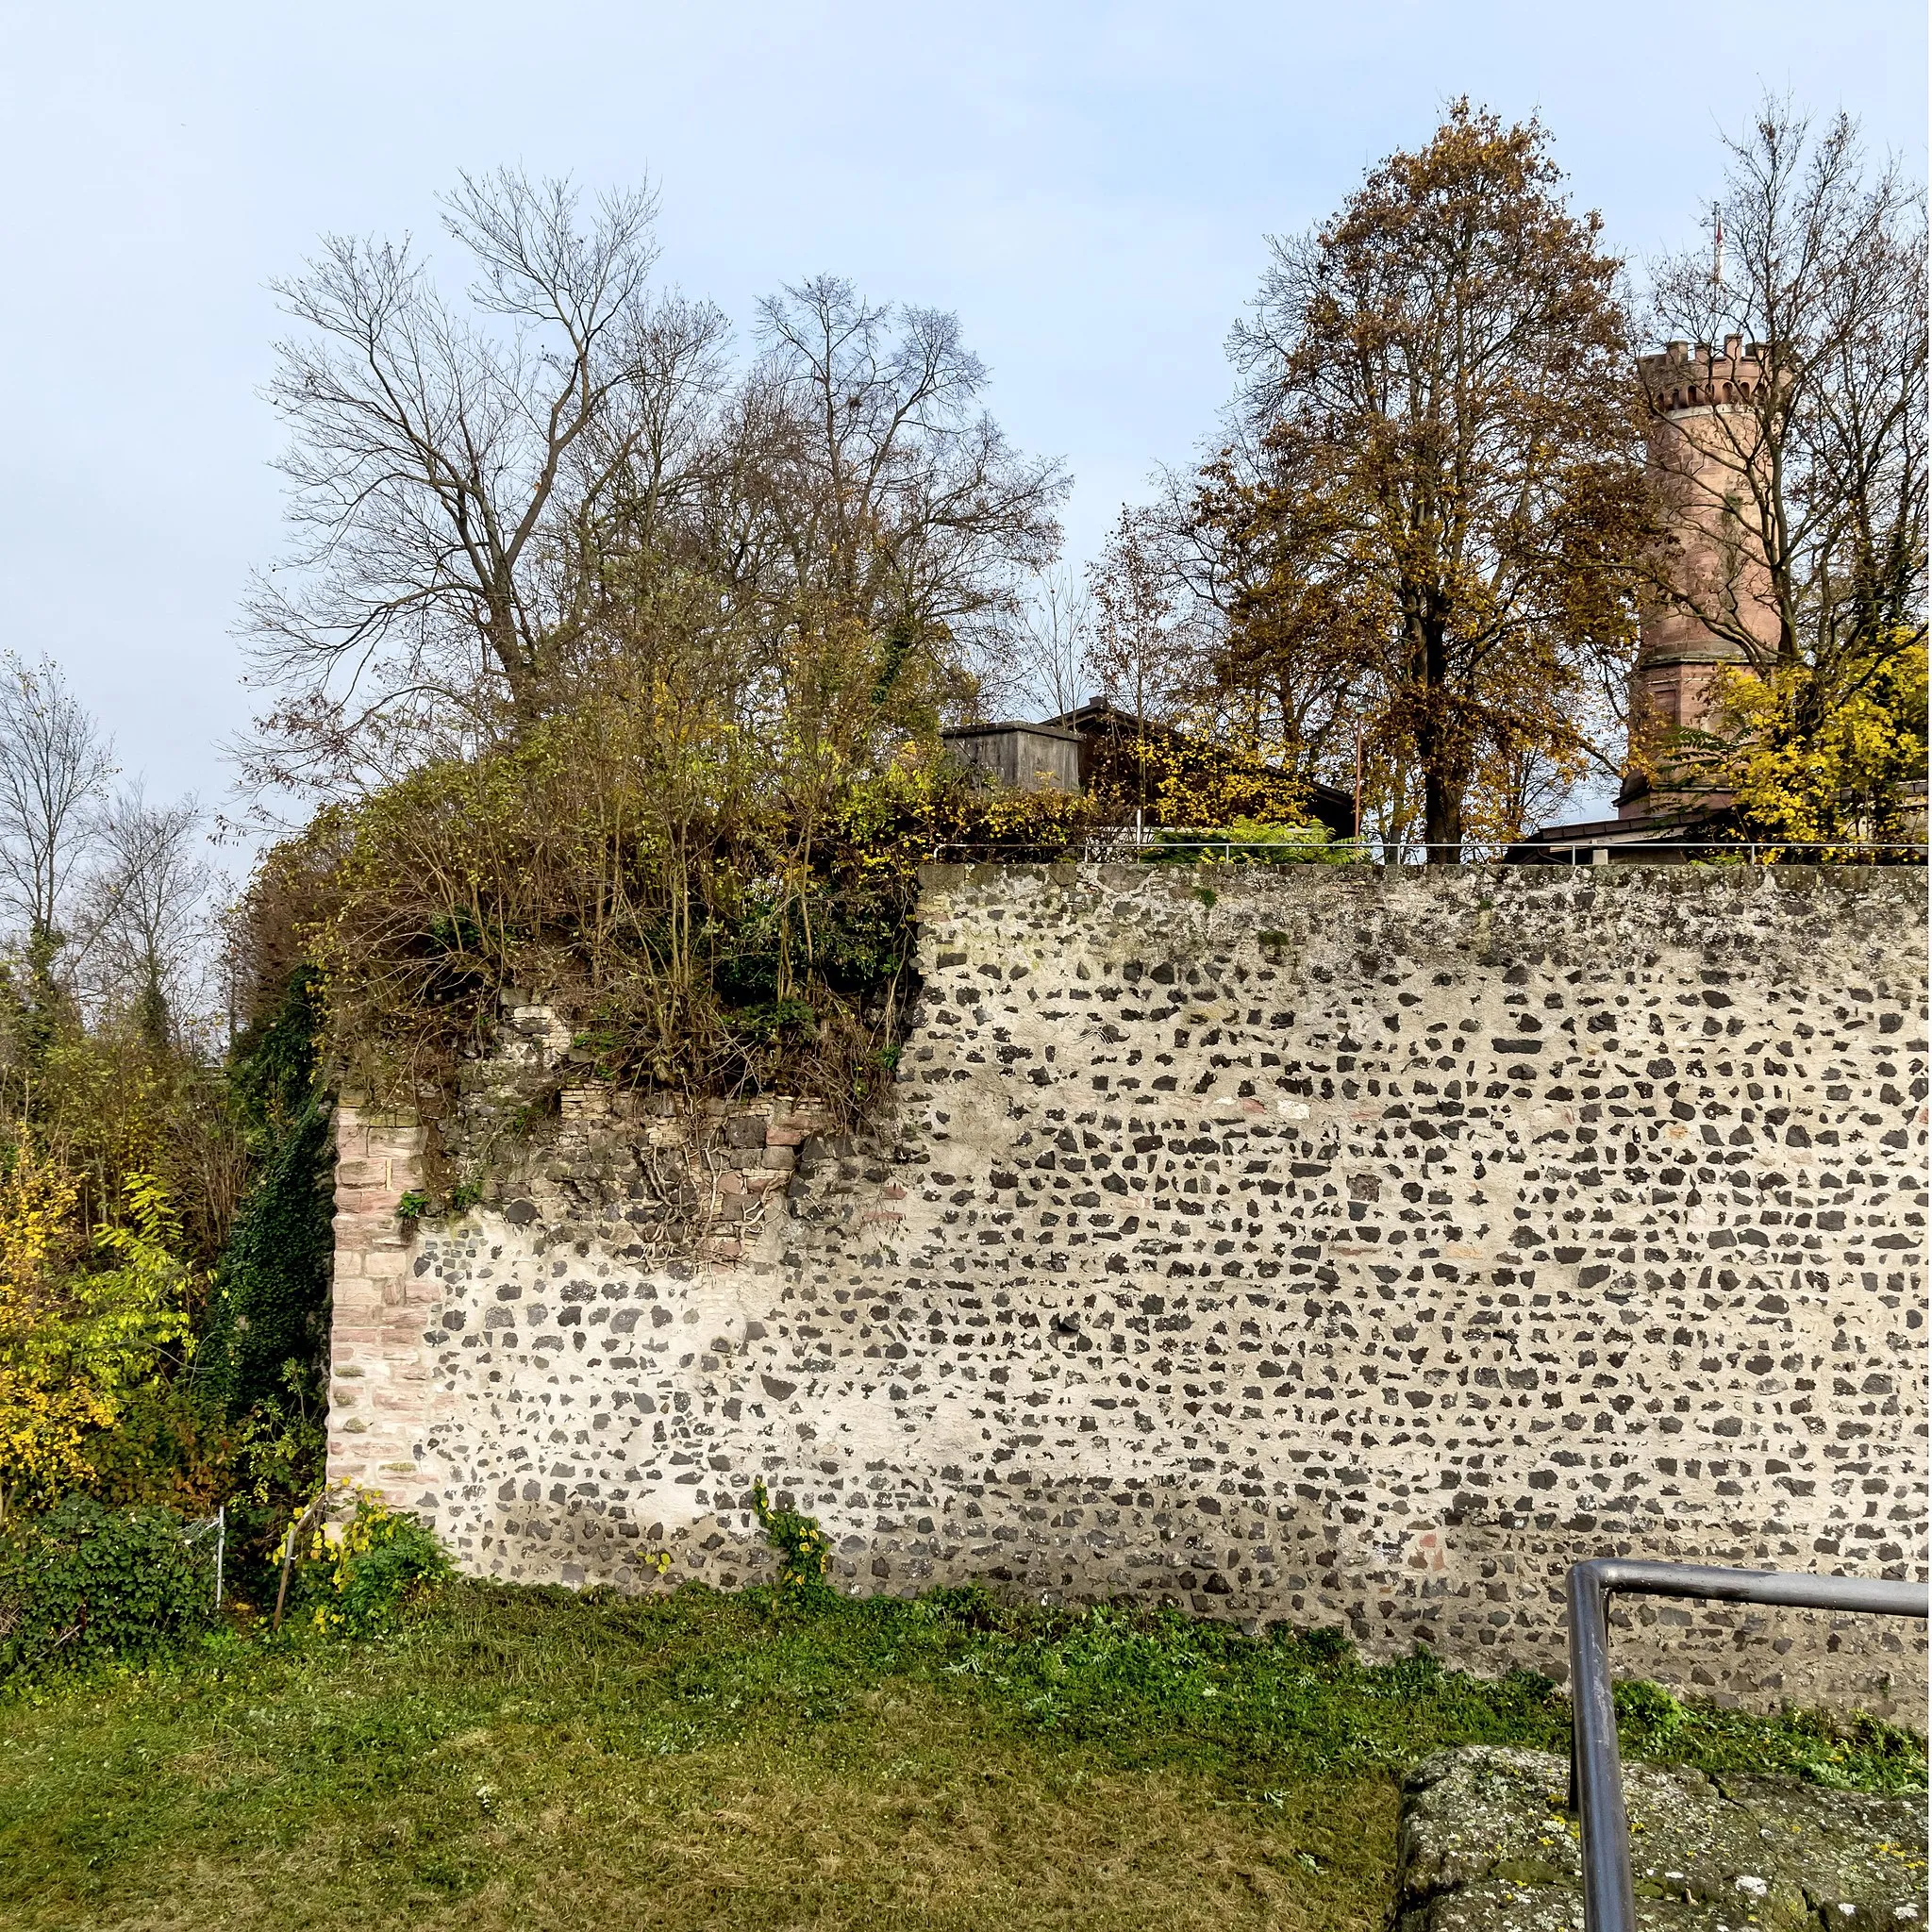 Photo showing: Bilder aus Breisach am Rhein

Der Münsterberg
Blick auf den Schlloßplatz von der Burg aus